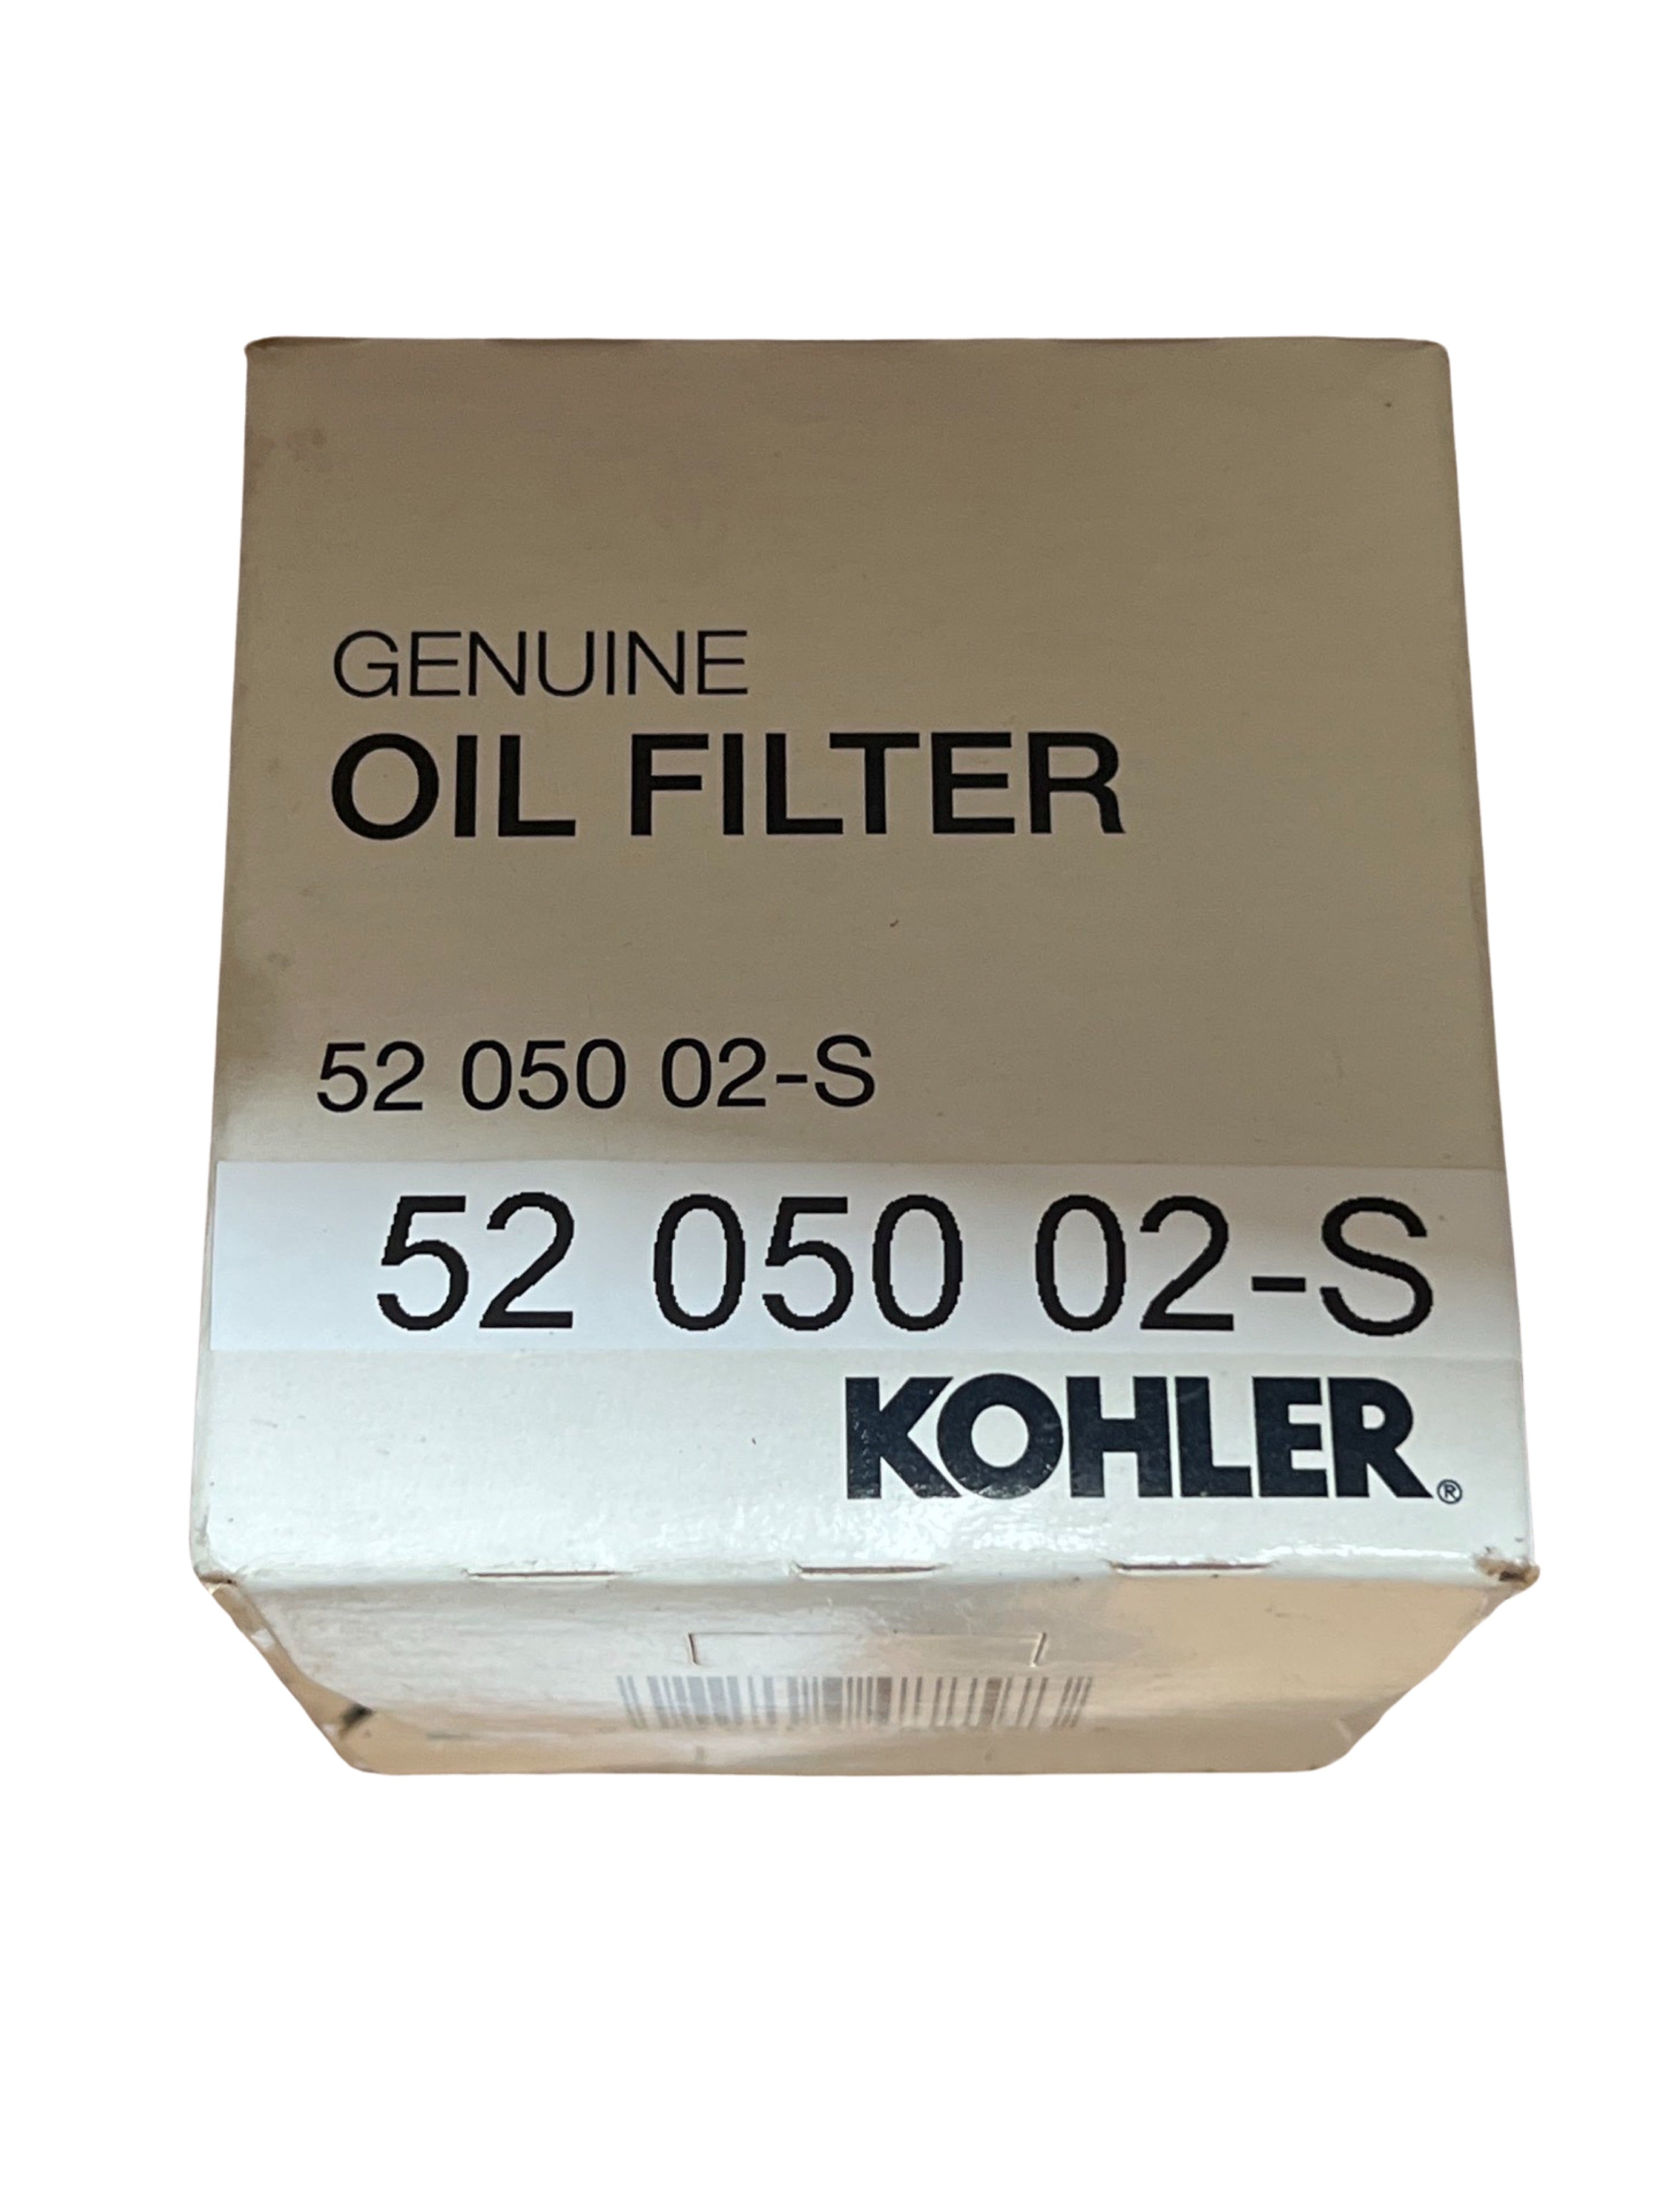 Genuine Oil Filter P/N: 52 050 02-S